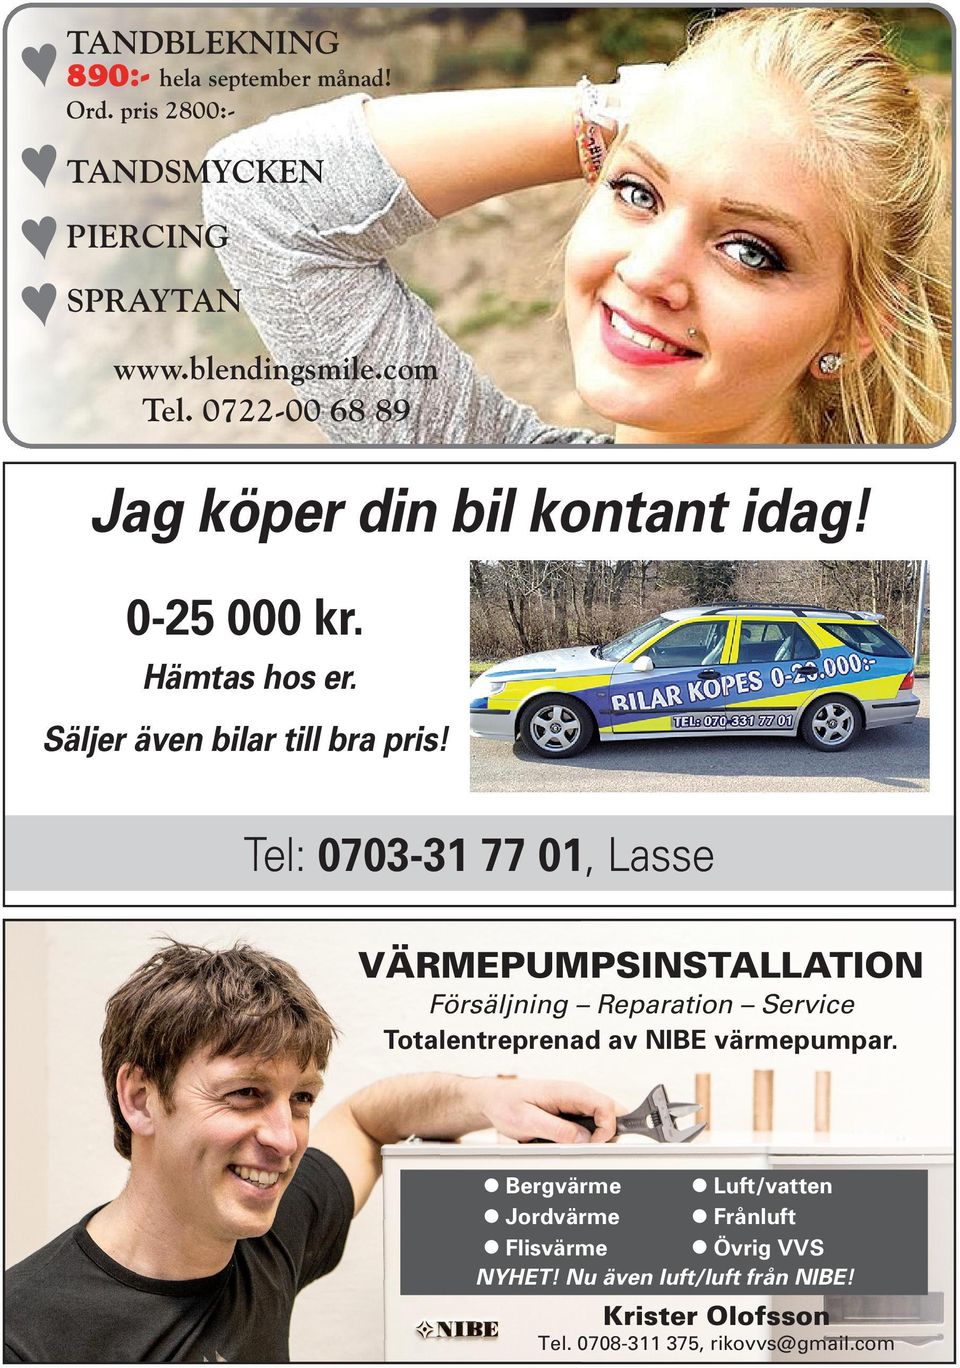 Tel: 0703-31 77 01, Lasse VÄRMEPUMPSINSTALLATION Försäljning Reparation Service Totalentreprenad av NIBE värmepumpar.